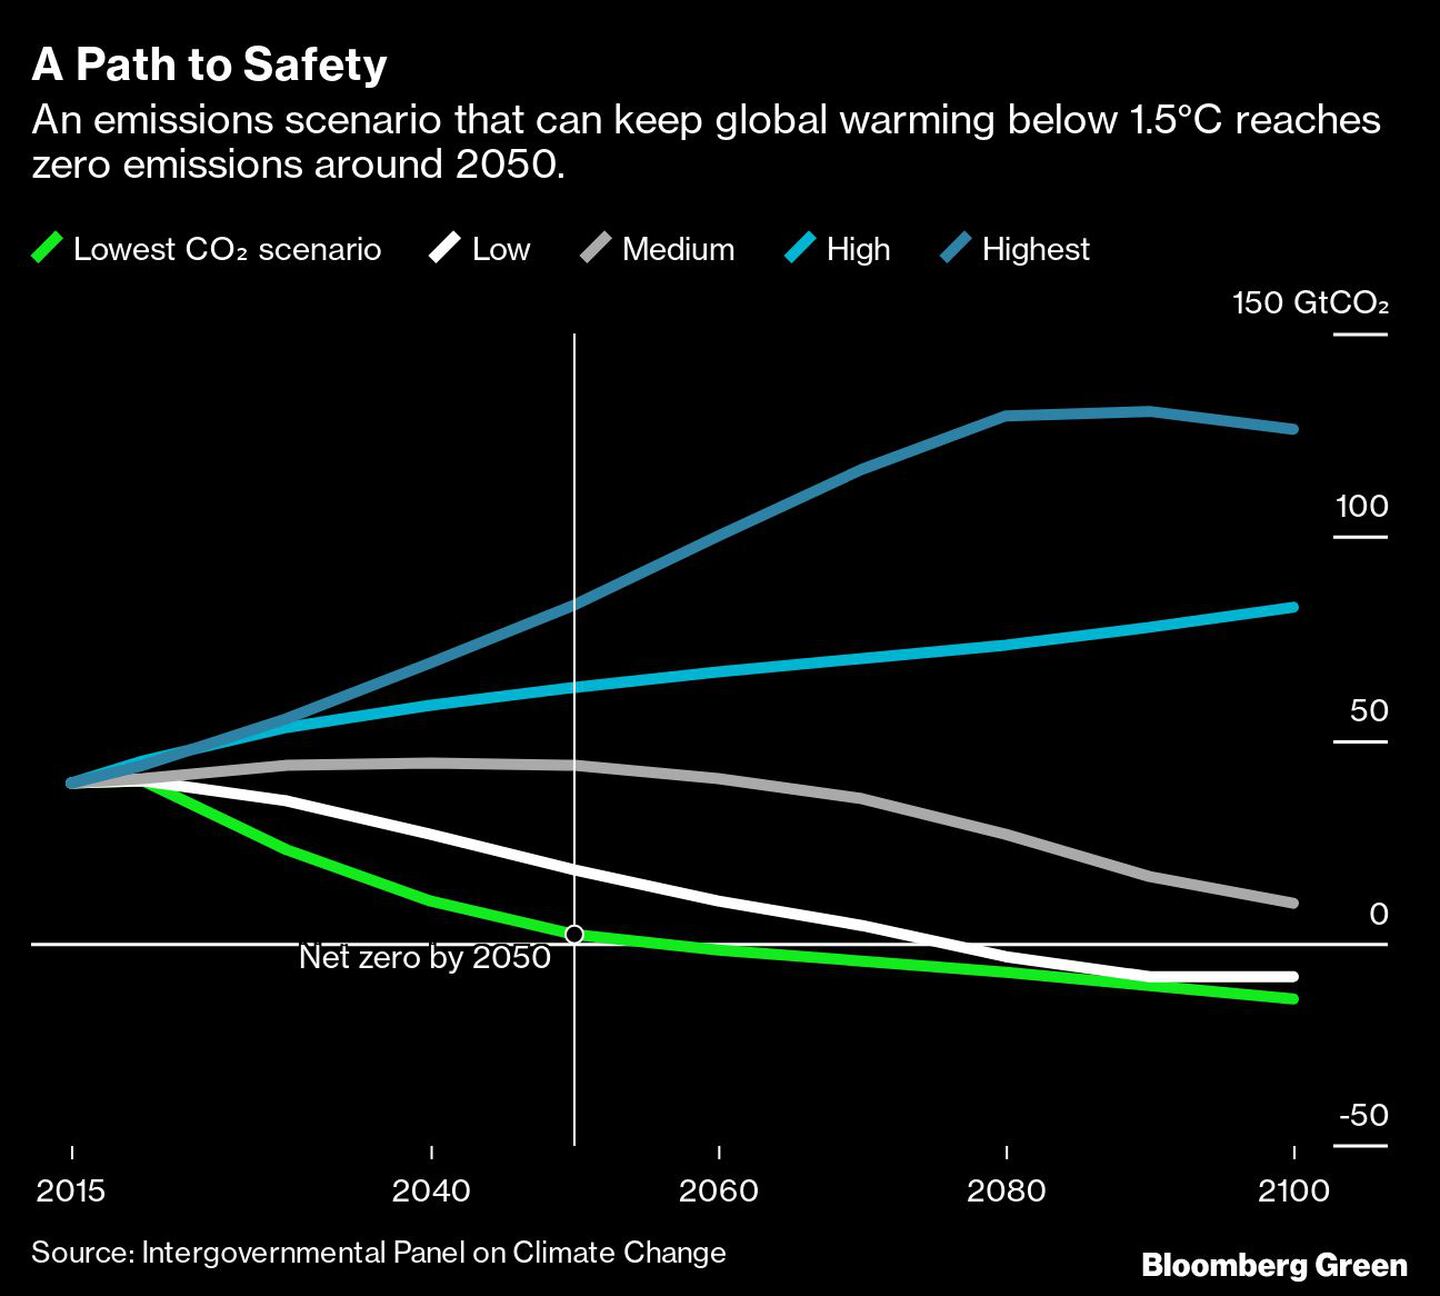 Un escenario donde el calentamiento global se puede mantener por debajo de los 1,5°C implica llegar a emisiones netas cero en 2050dfd